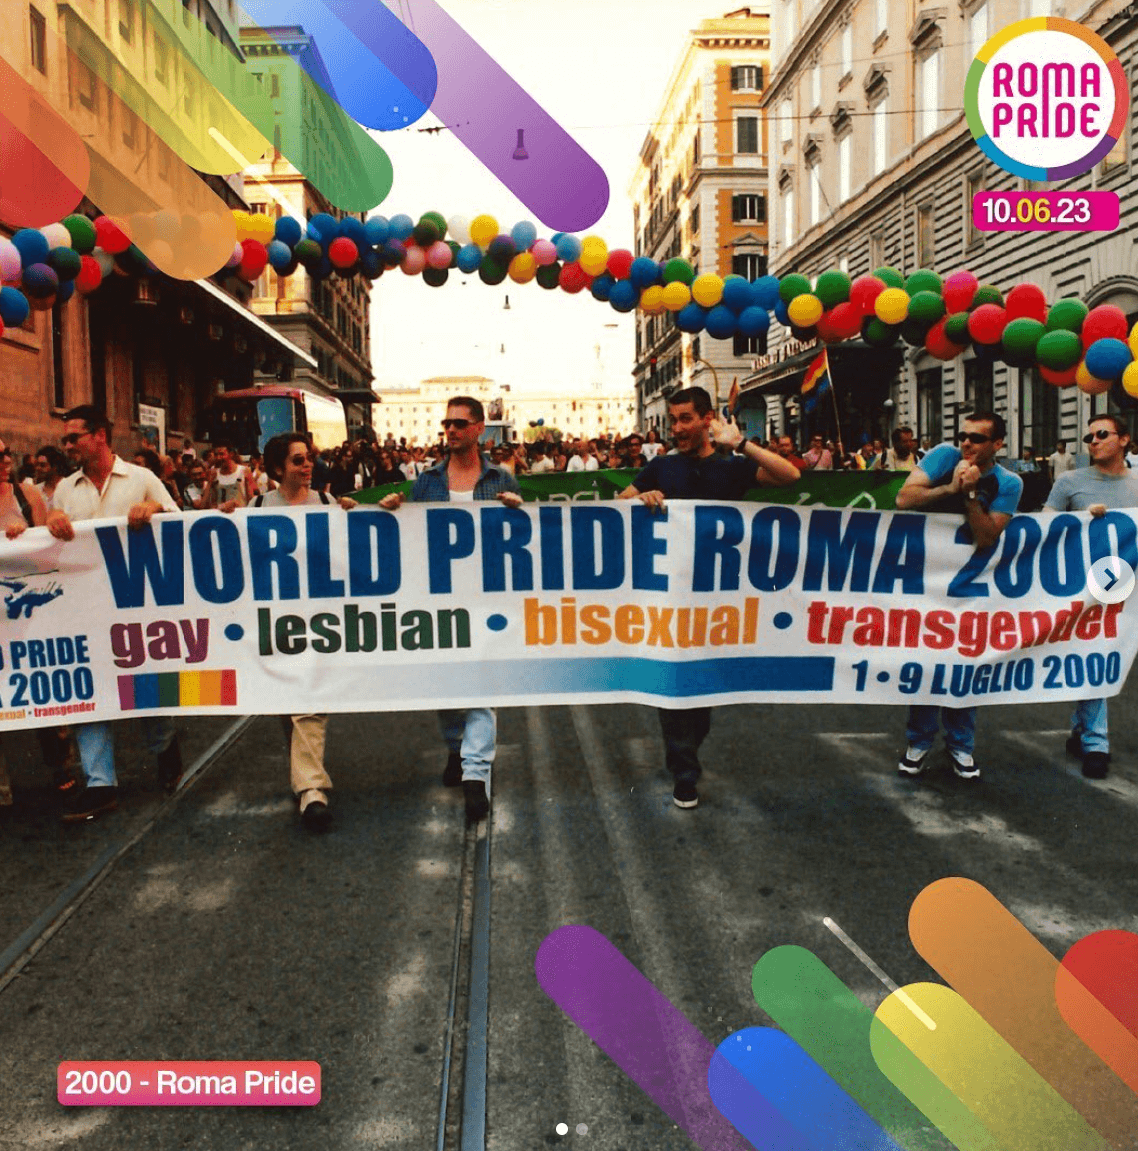 Roma Pride 2023: "Nessuno può silenziarci e farci retrocedere sui diritti. Sabato saremo tantissimə!" - Roma Pride 2000 - Gay.it